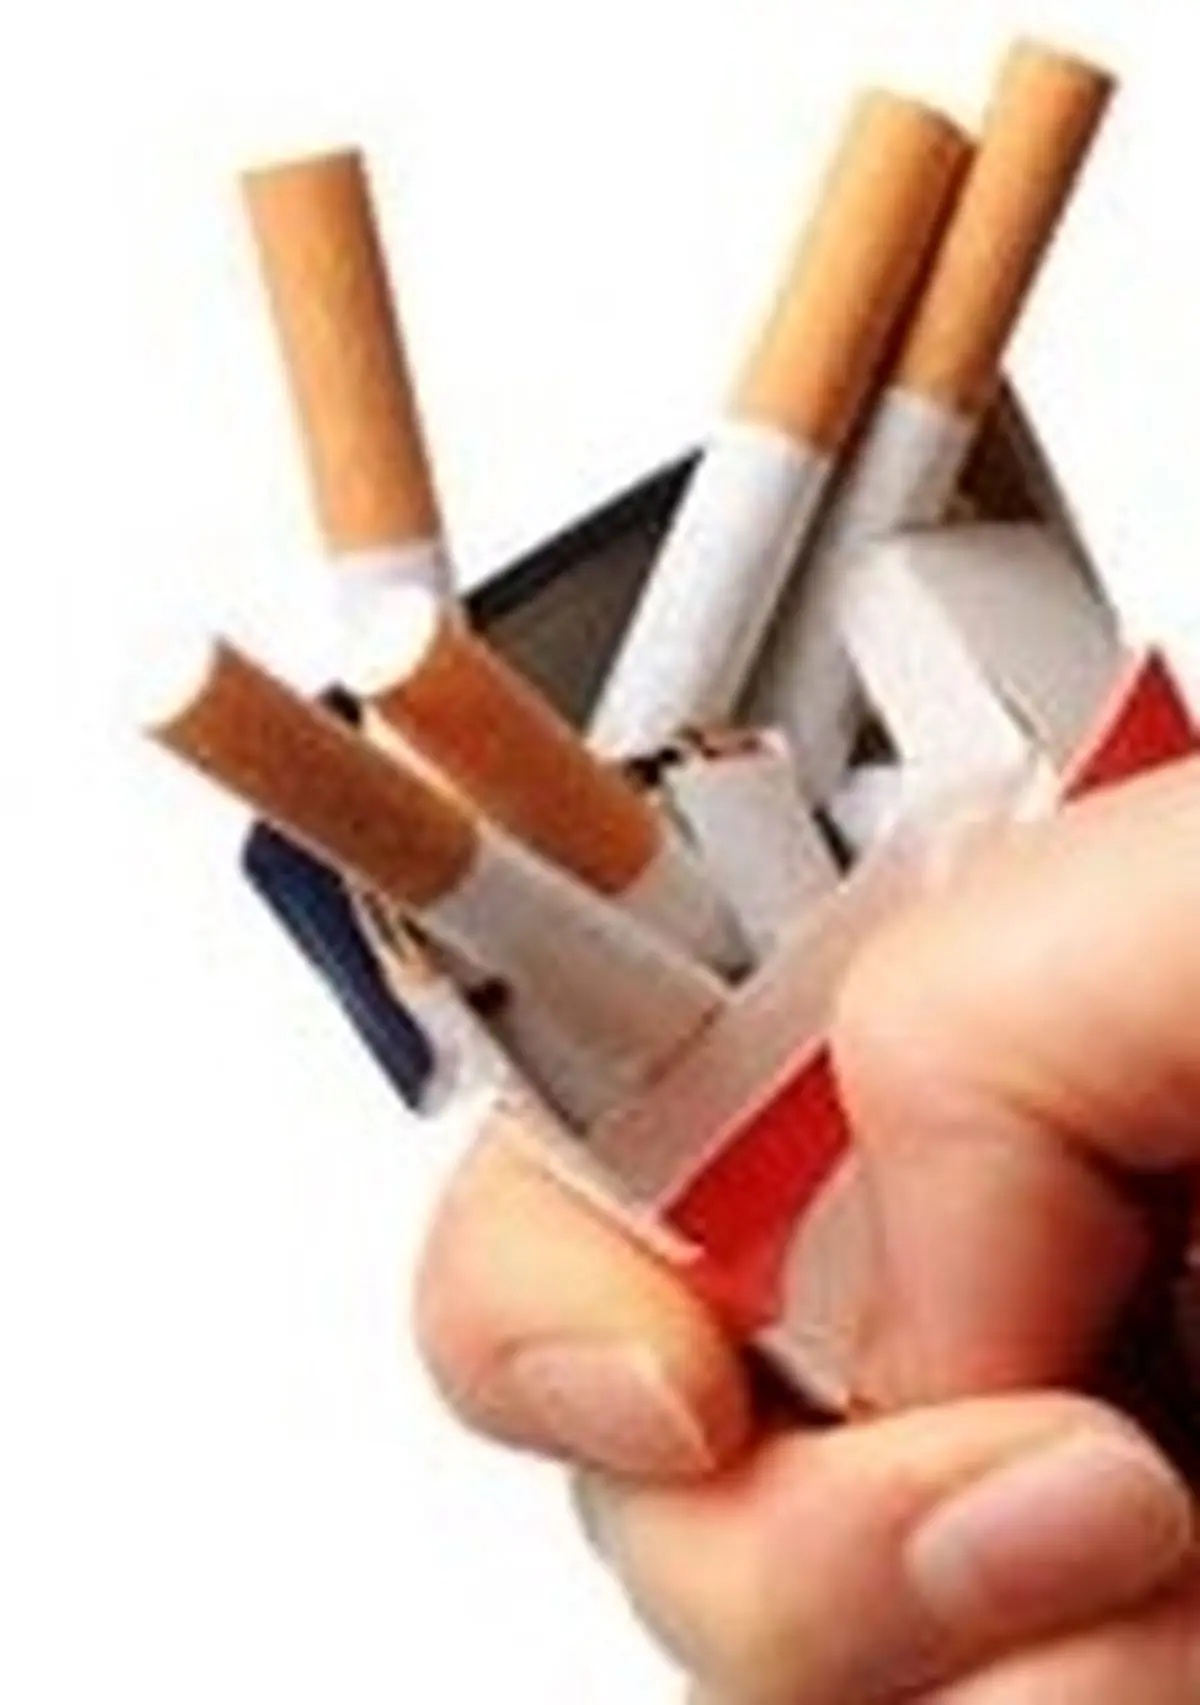  درمان بسیار آسان برای ترک سیگار